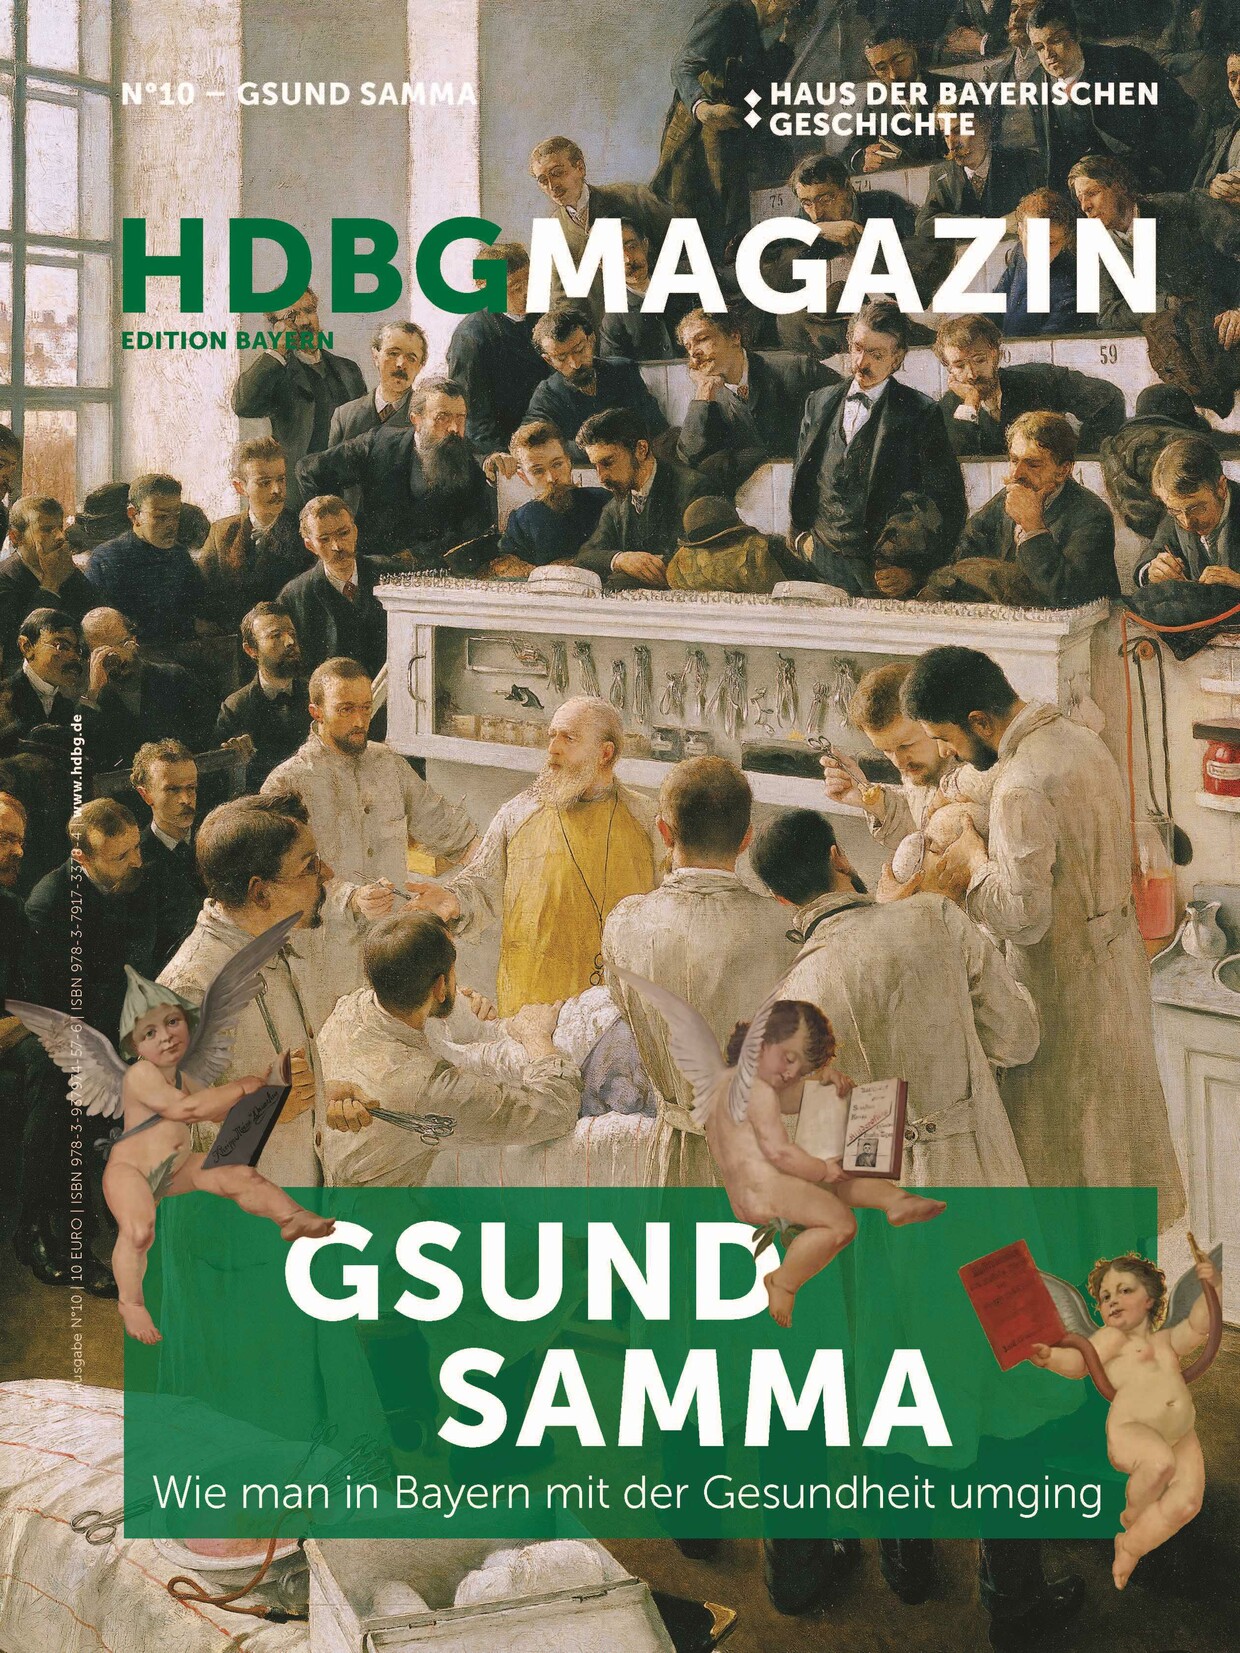 Das HDBG Magazin Nummer 10 © HdBG | Gestaltung: FRIENDS – Menschen Marken Medien